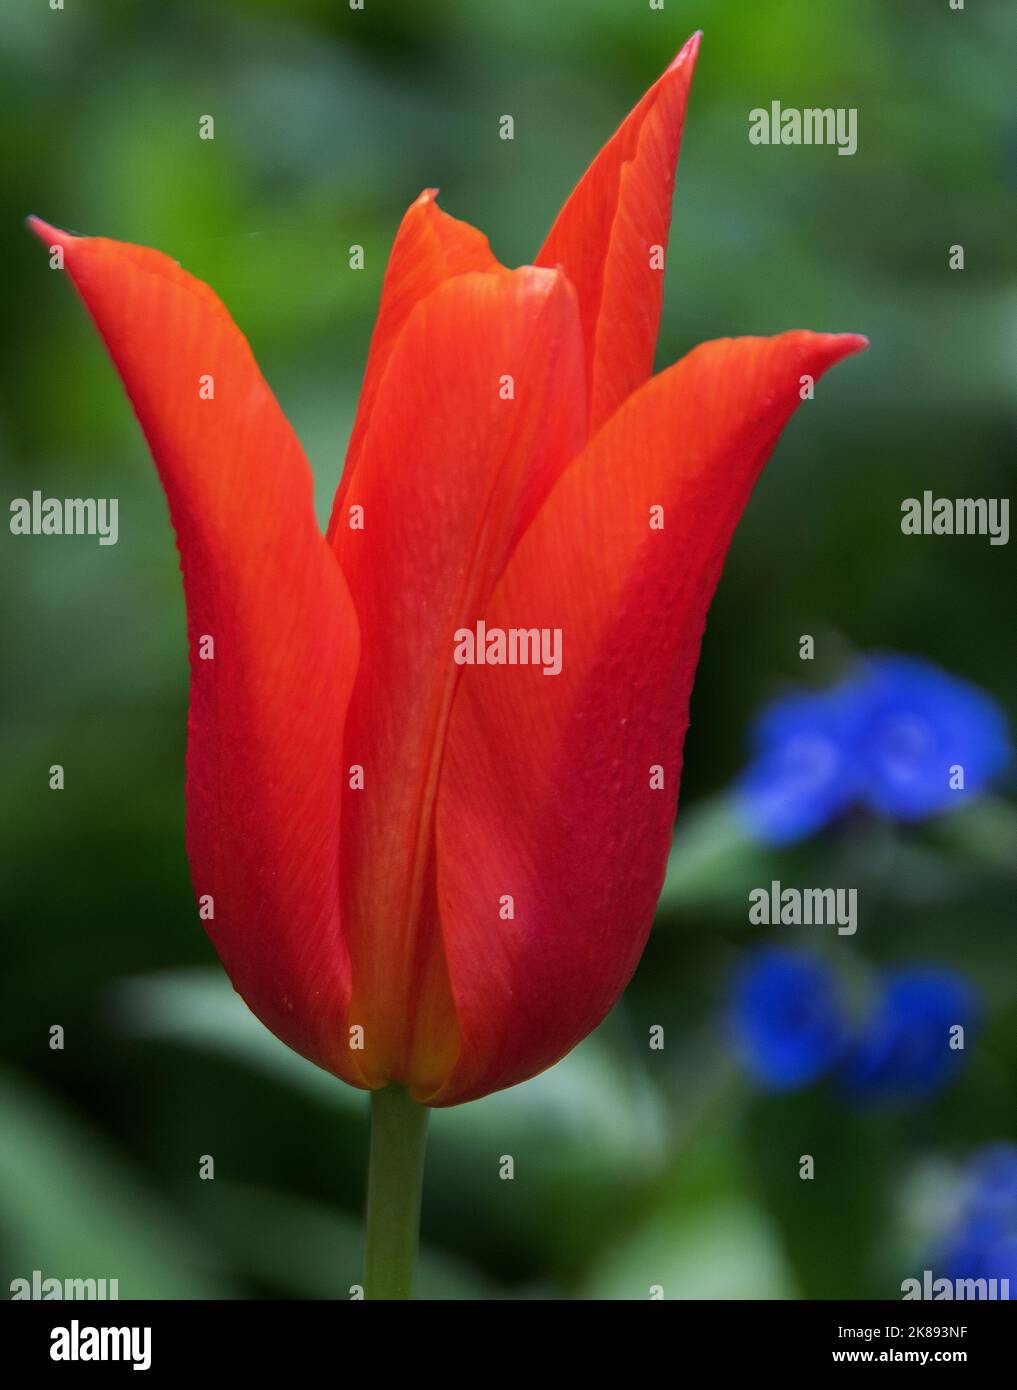 Tulipe « Ballerina » un classique élégant tulipe à fleurs de nénuphars - la plus belle des fleurs orange aux nuances subtiles de rouge. Ses fleurs vives contrastent Banque D'Images